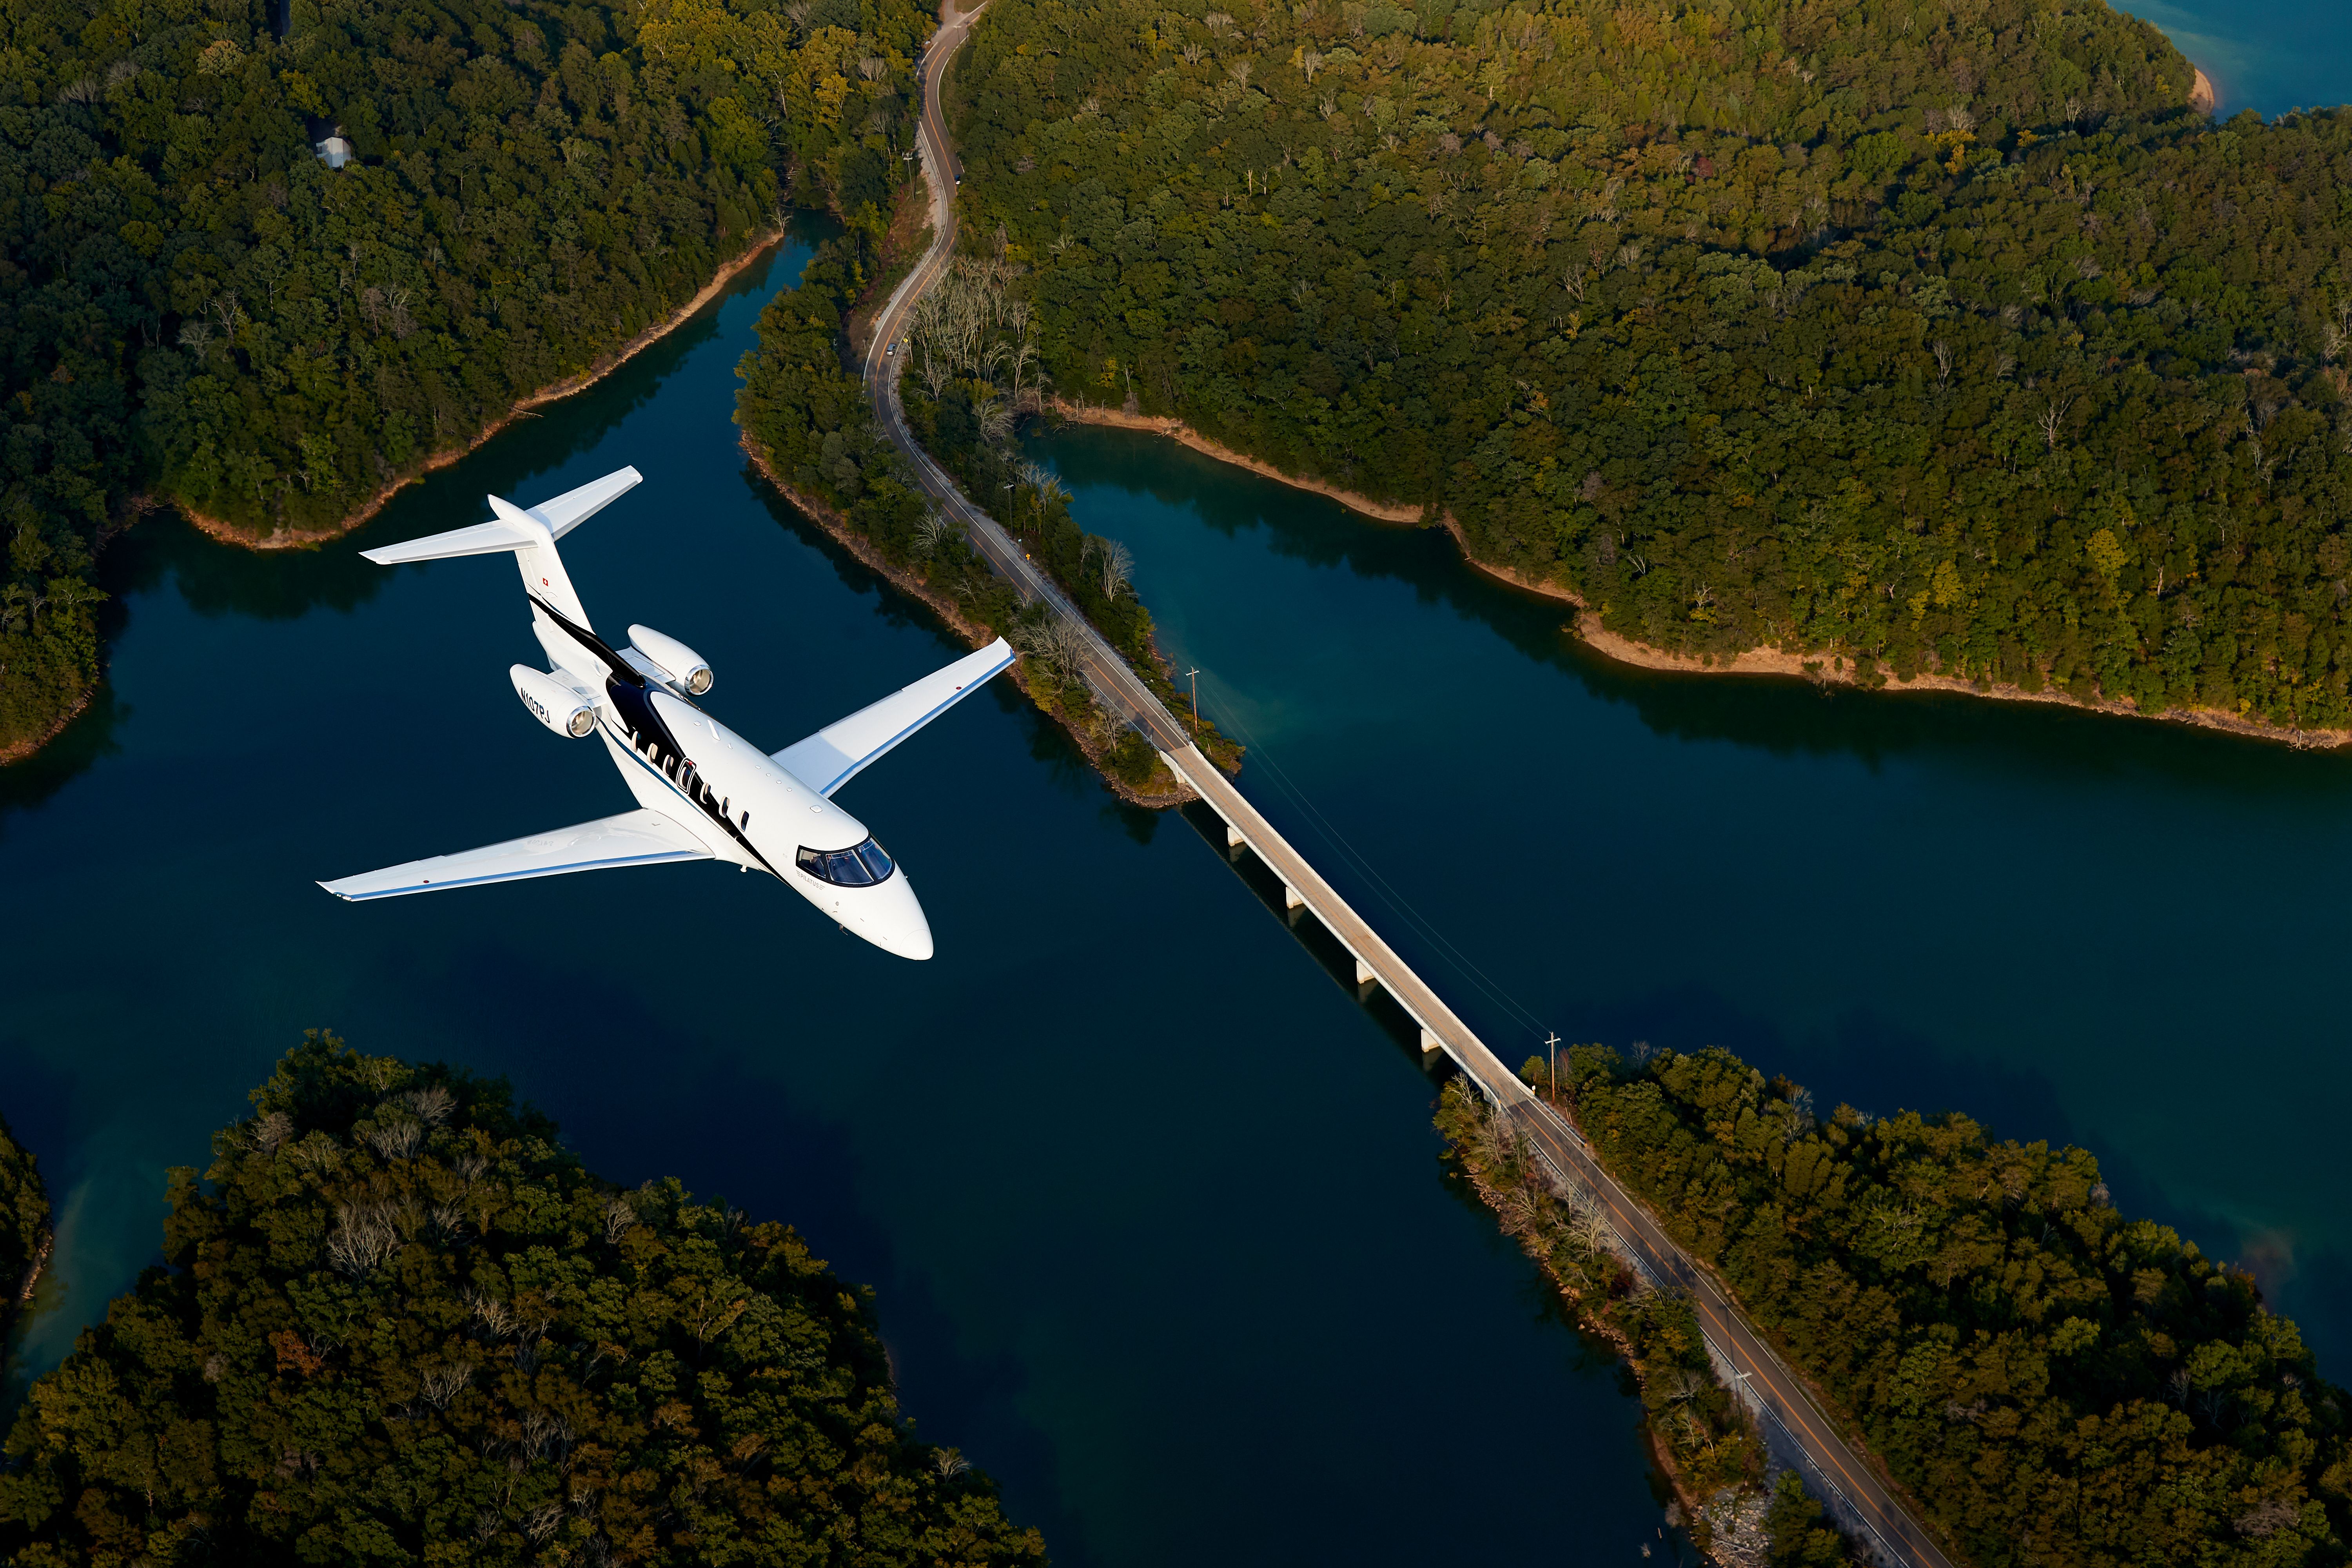 The Pilatus PC-24 Super Versatile Jet flying over water.